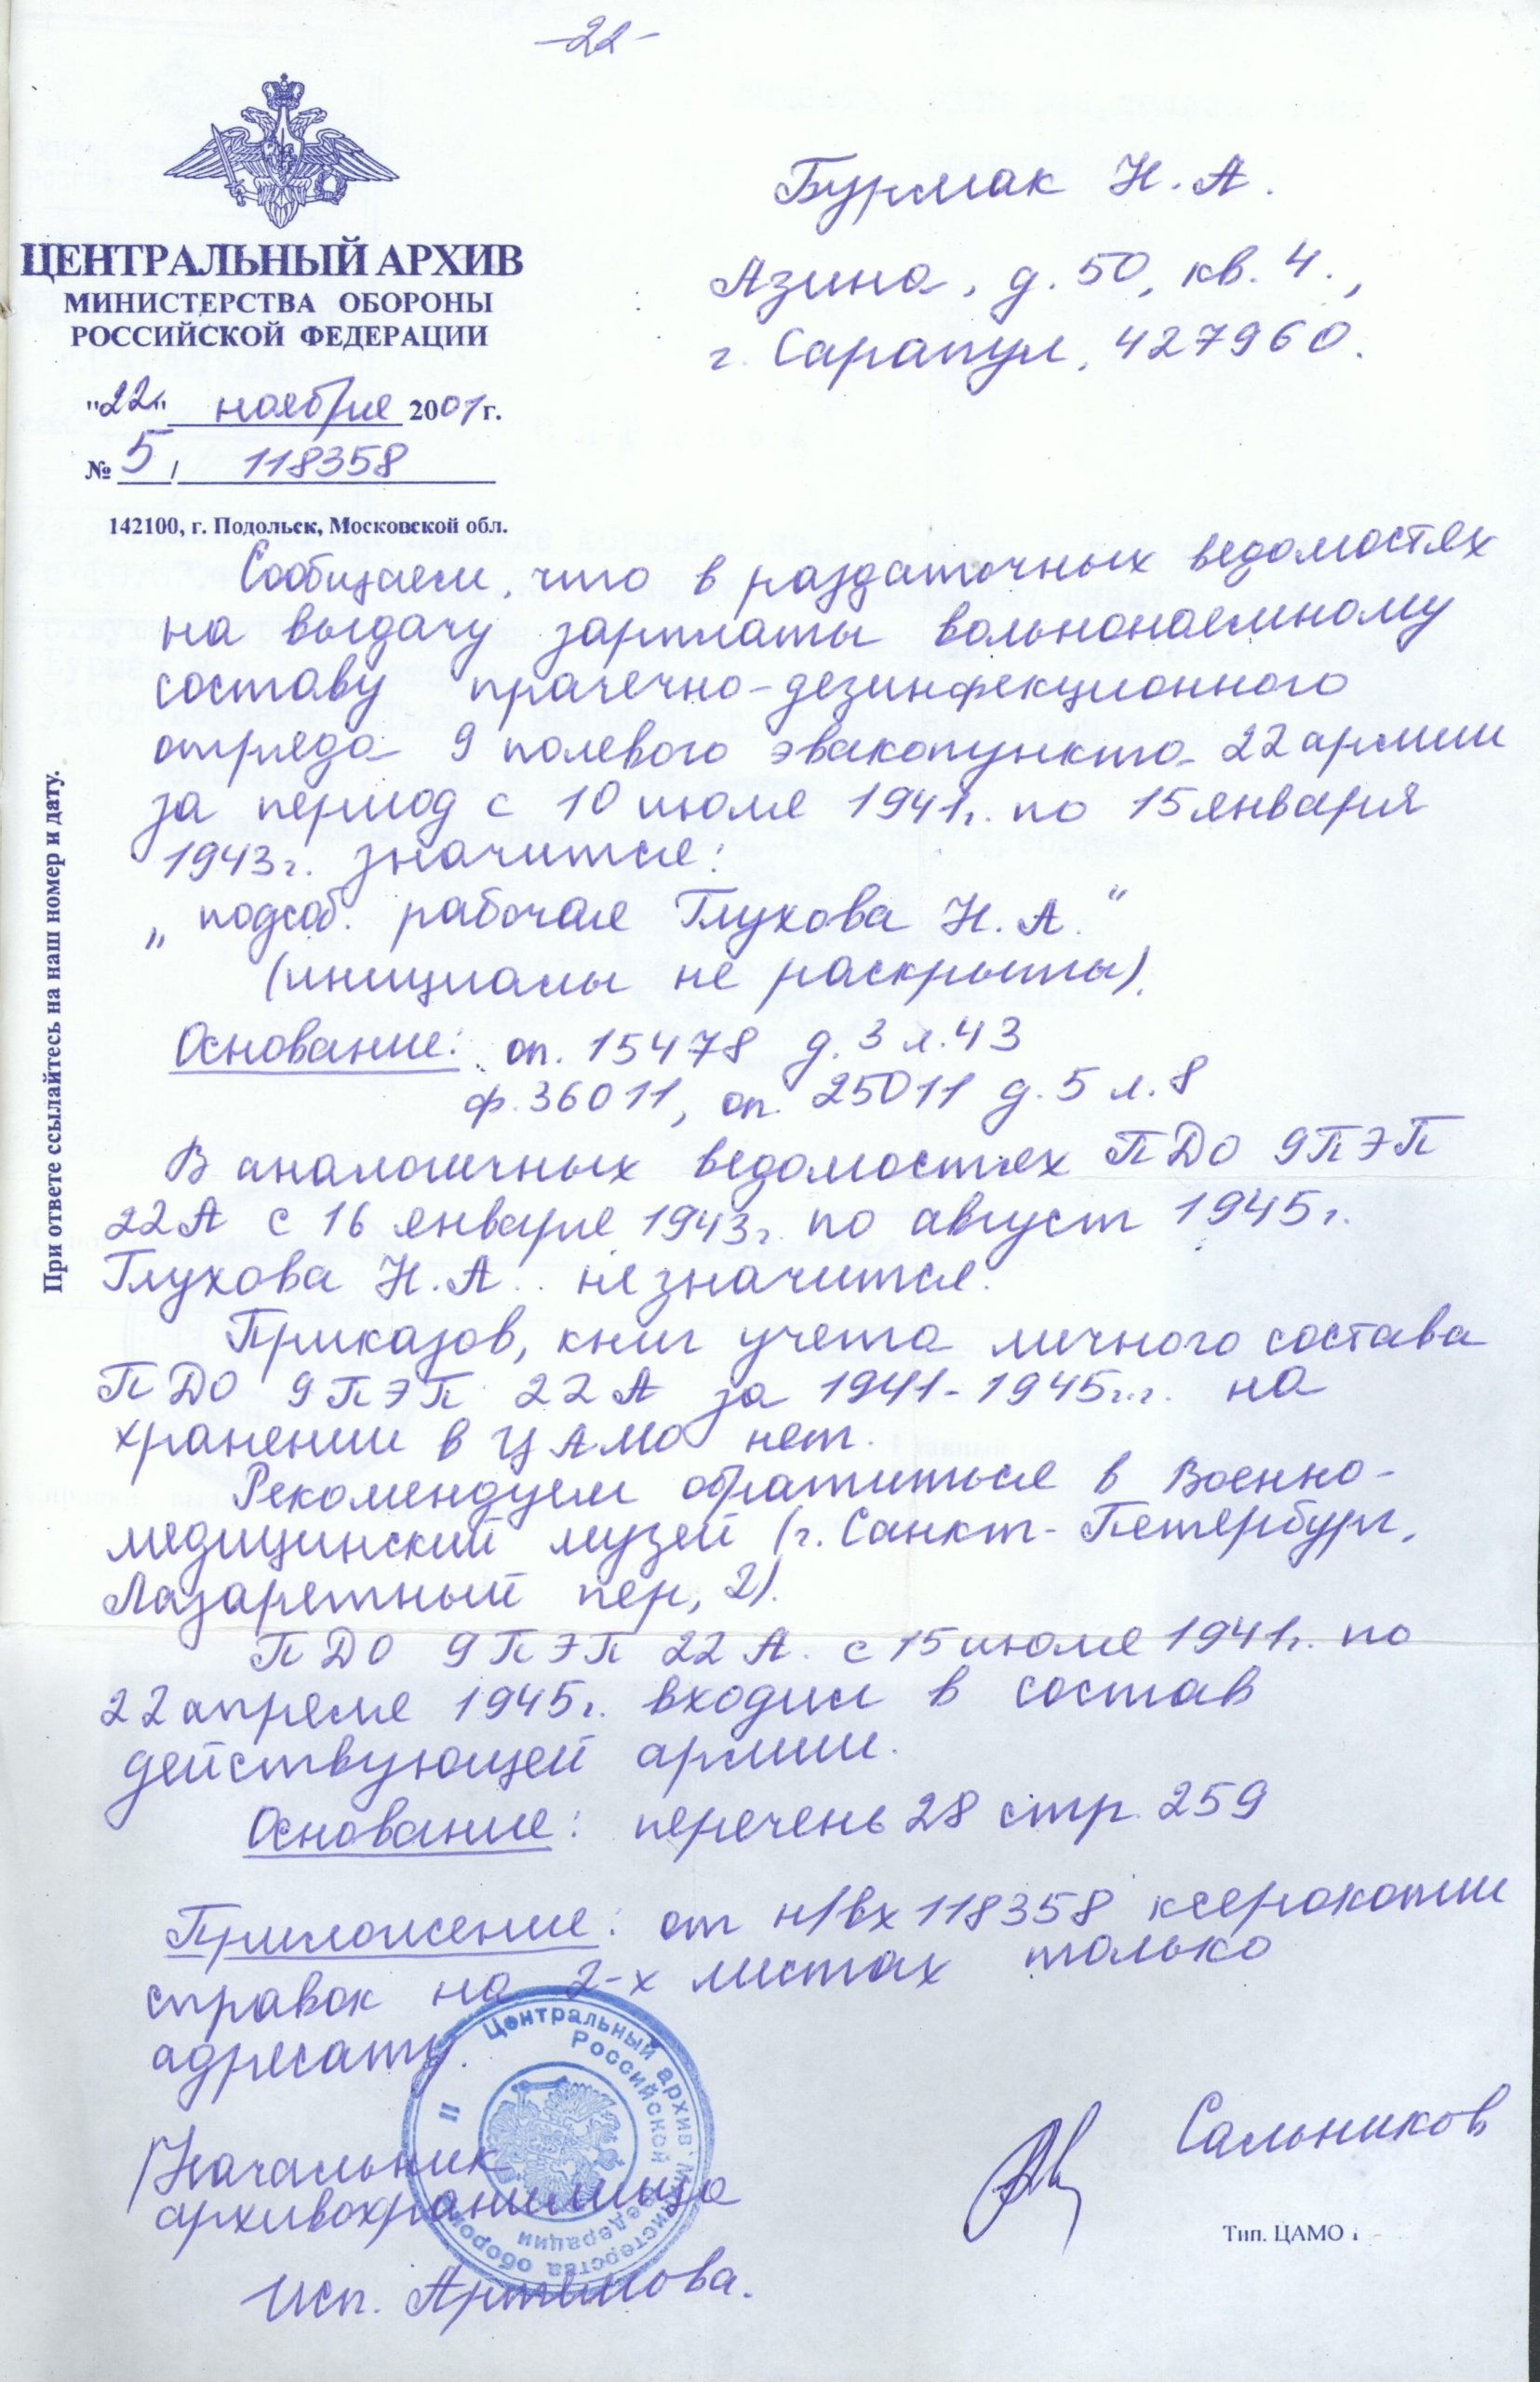 Справка из Центрального архива МО РФ 2001 г.